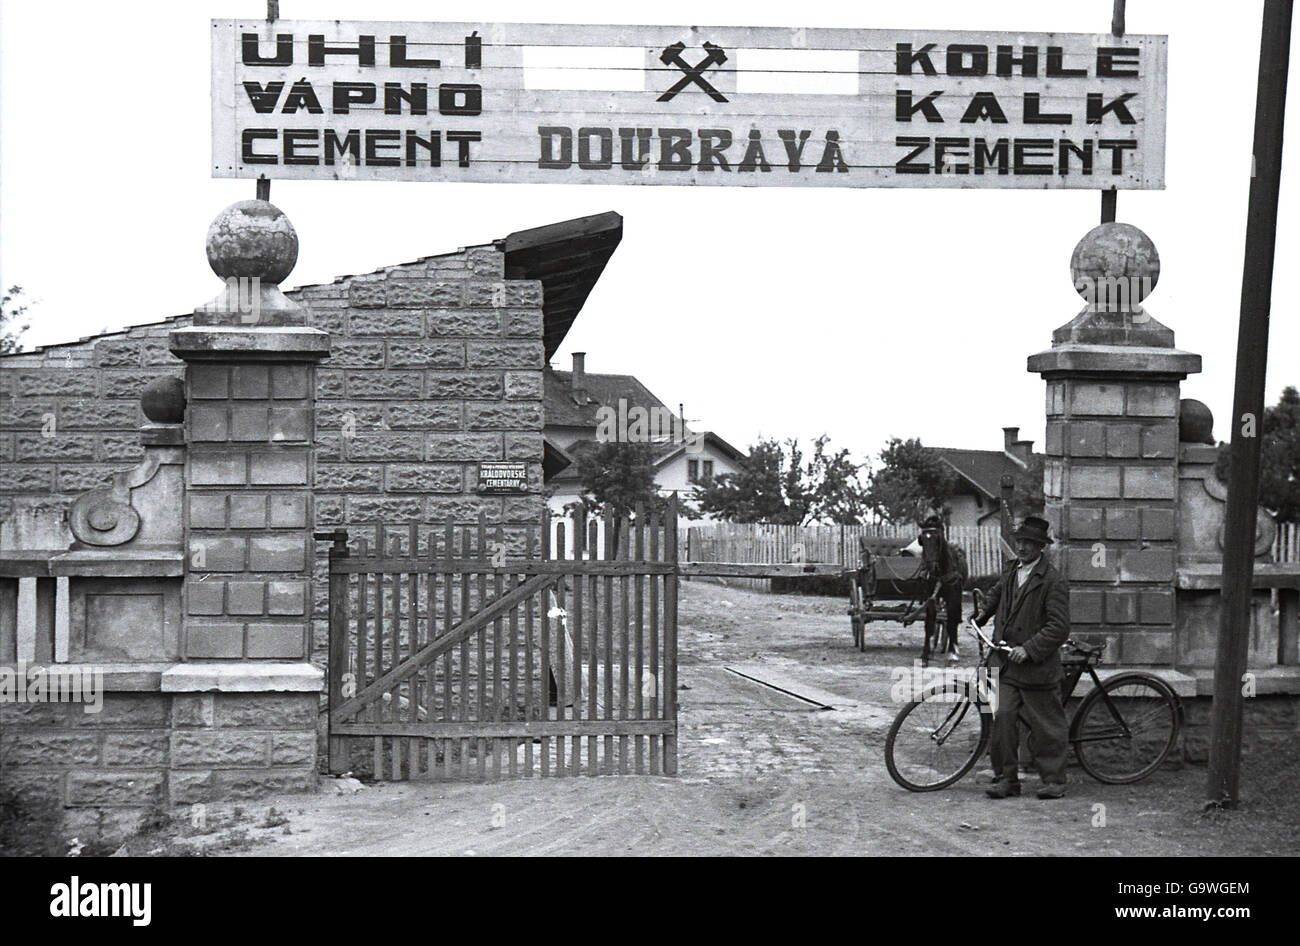 1930s, foto storiche che mostra l'entrata di una costruzione locale deposito merci, Doubrava, Regione di Karlovy Vary, nel Sudetenland, in preWW11 Cecoslovacchia. Foto Stock